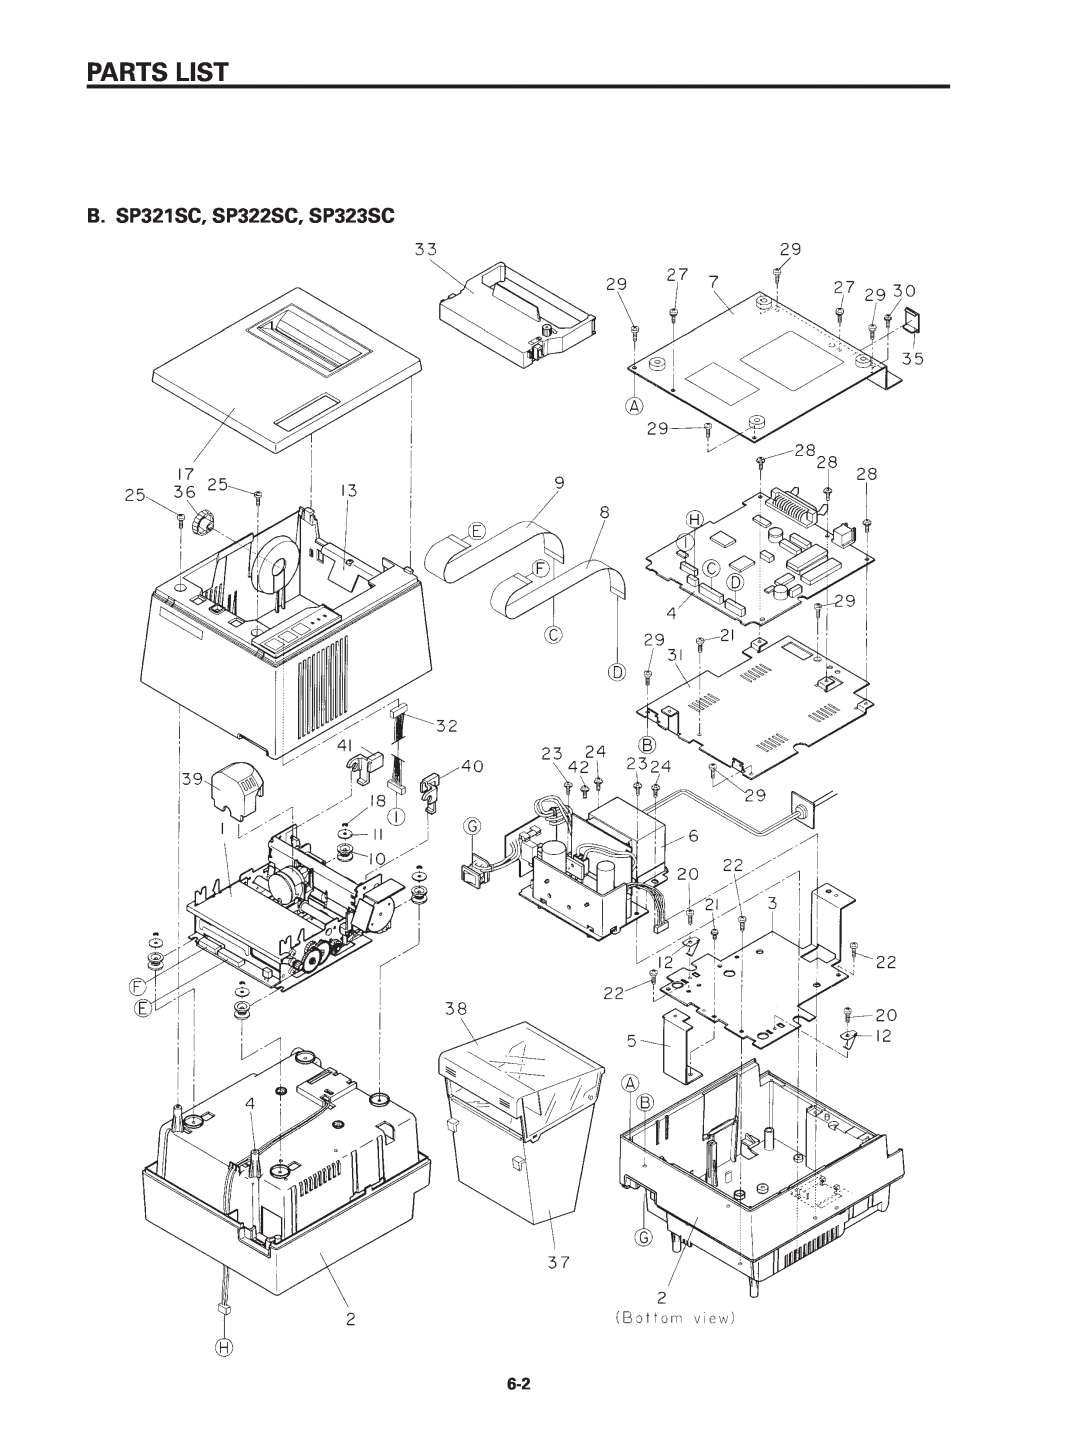 Star Micronics SP320S technical manual B. SP321SC, SP322SC, SP323SC, Parts List 